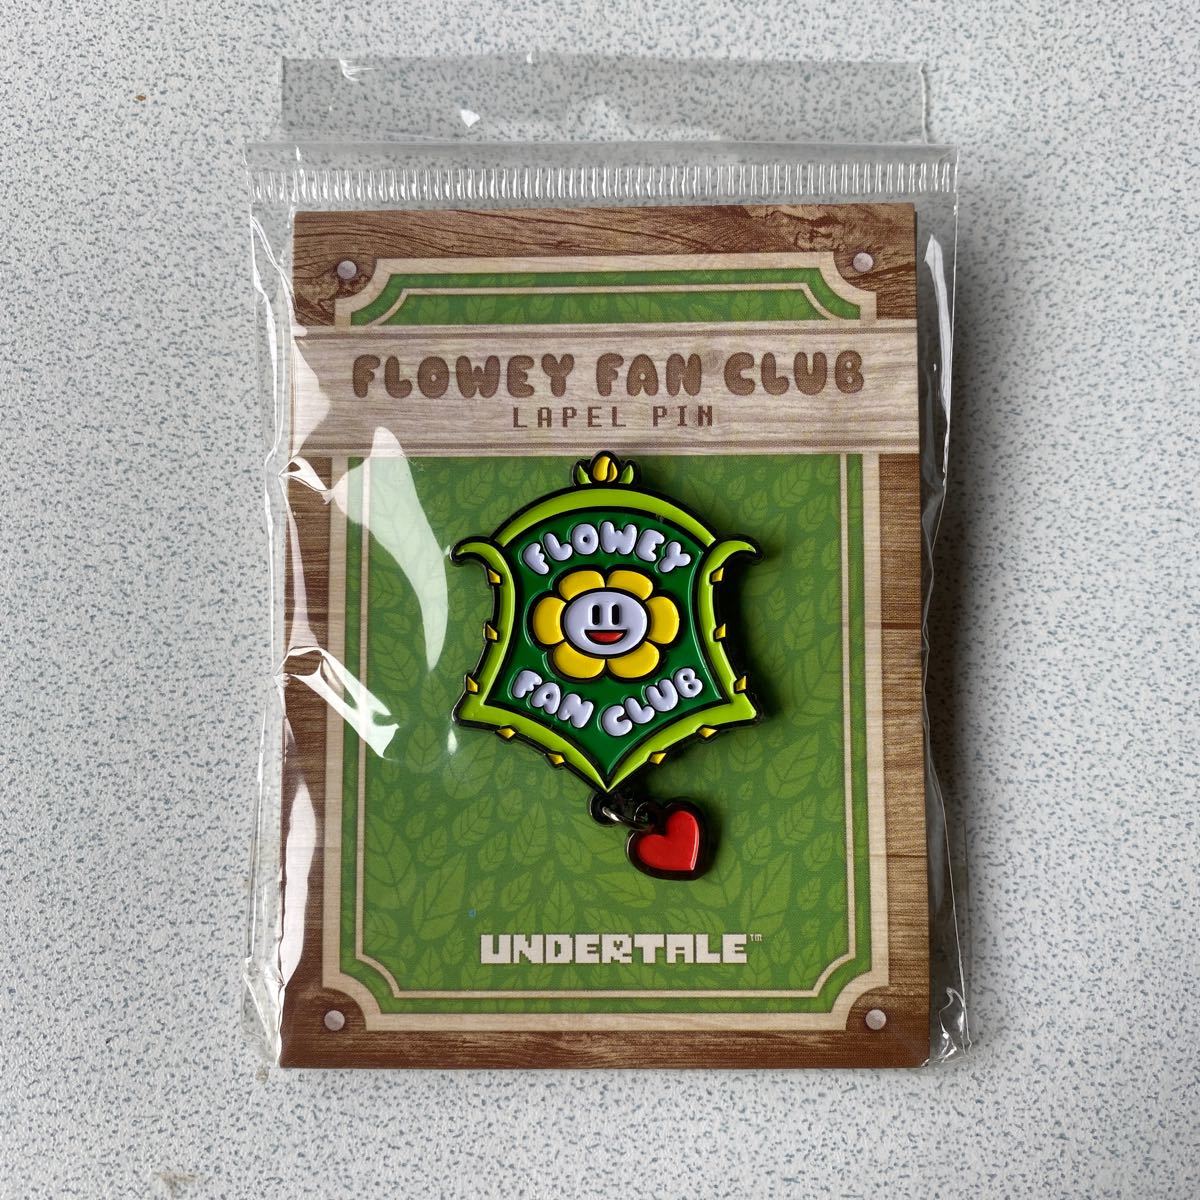 Flowey Fan Club Lapel Pin